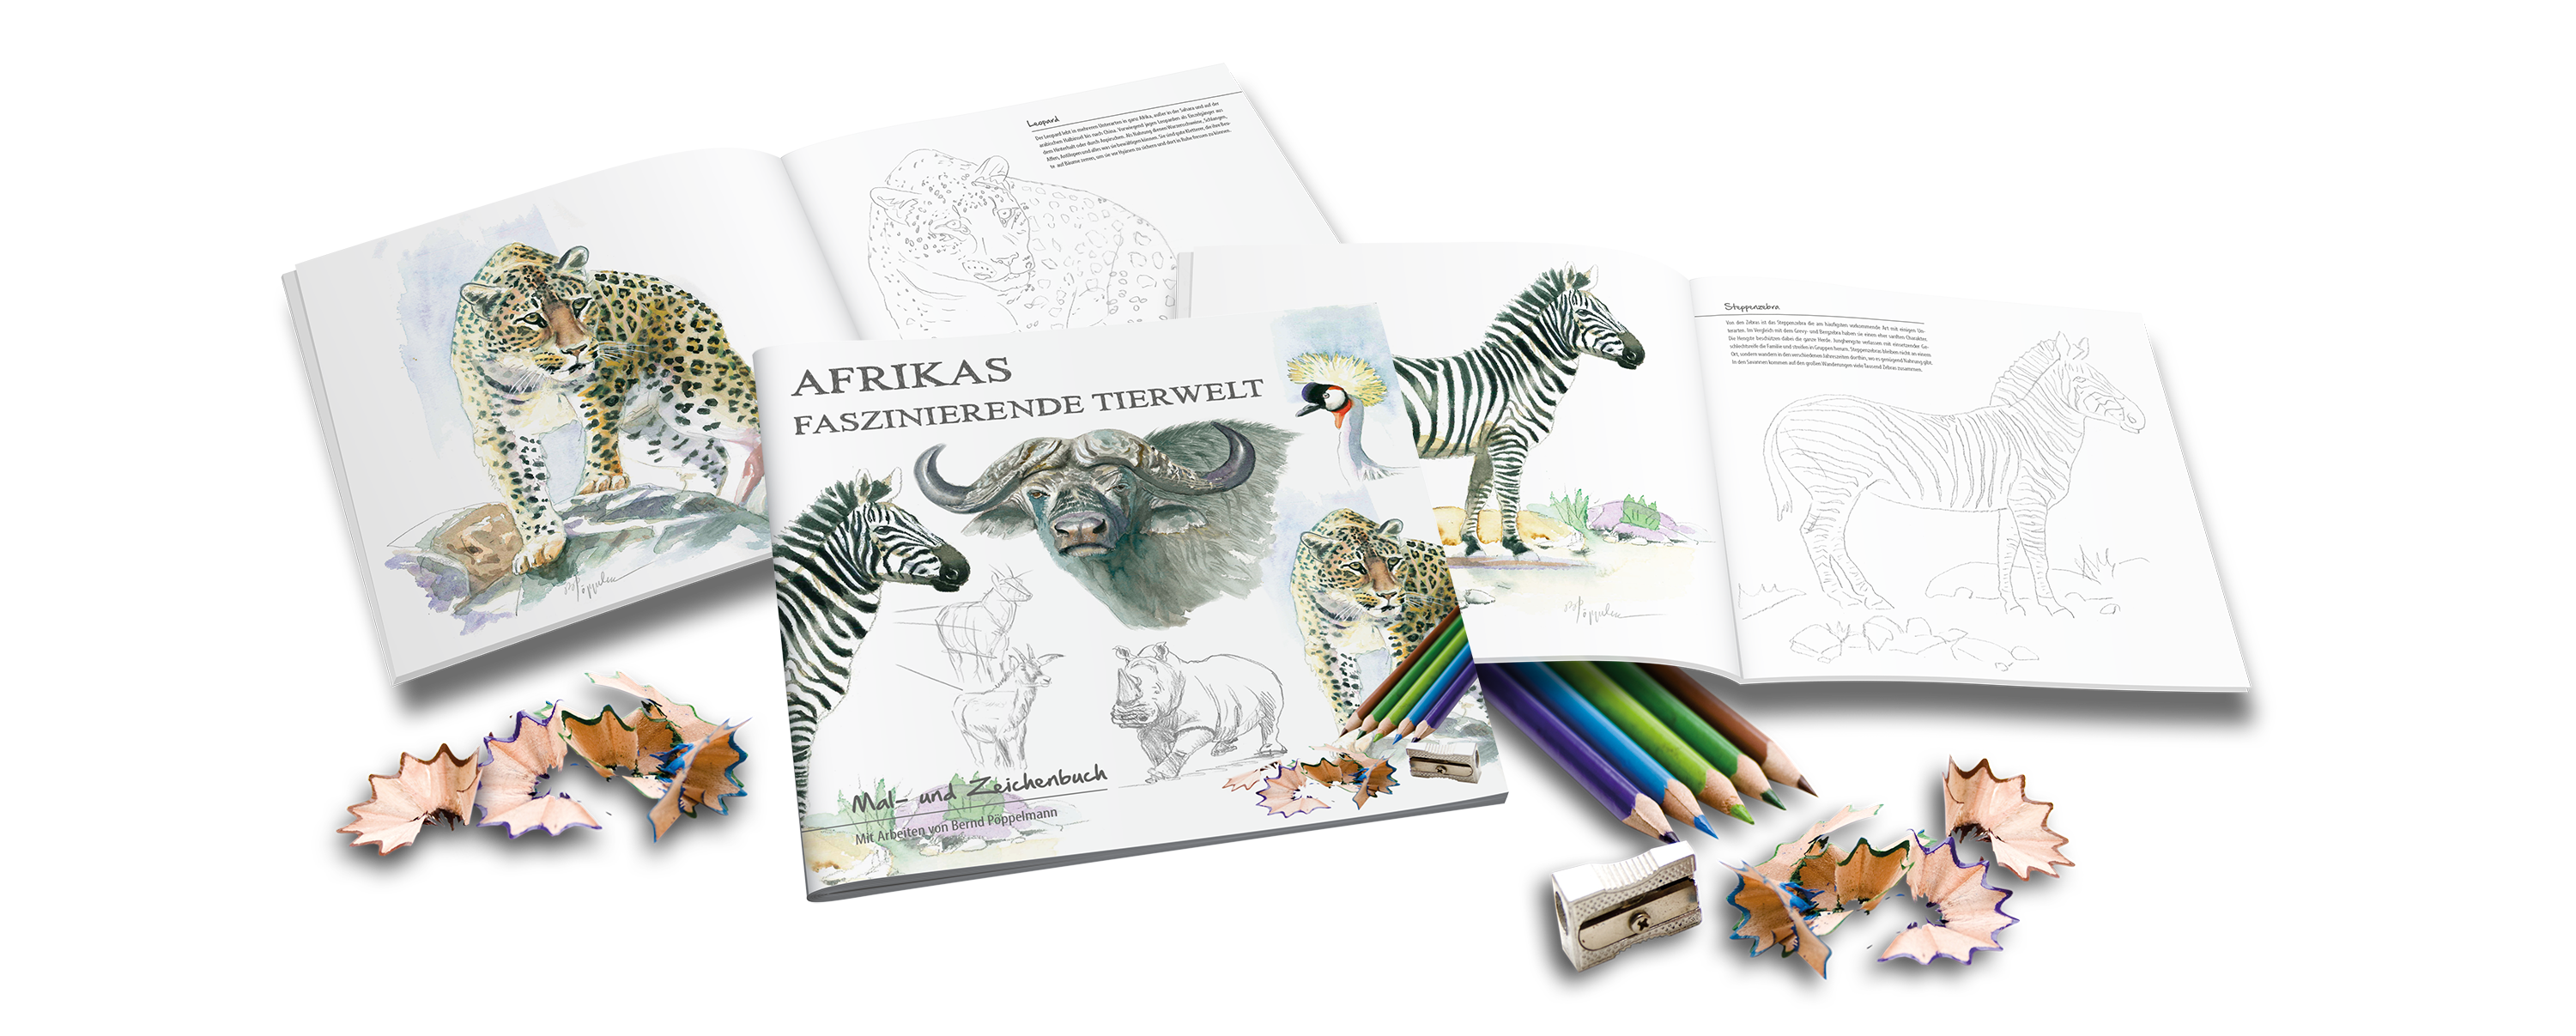 Afrikas faszinierende Tierwelt